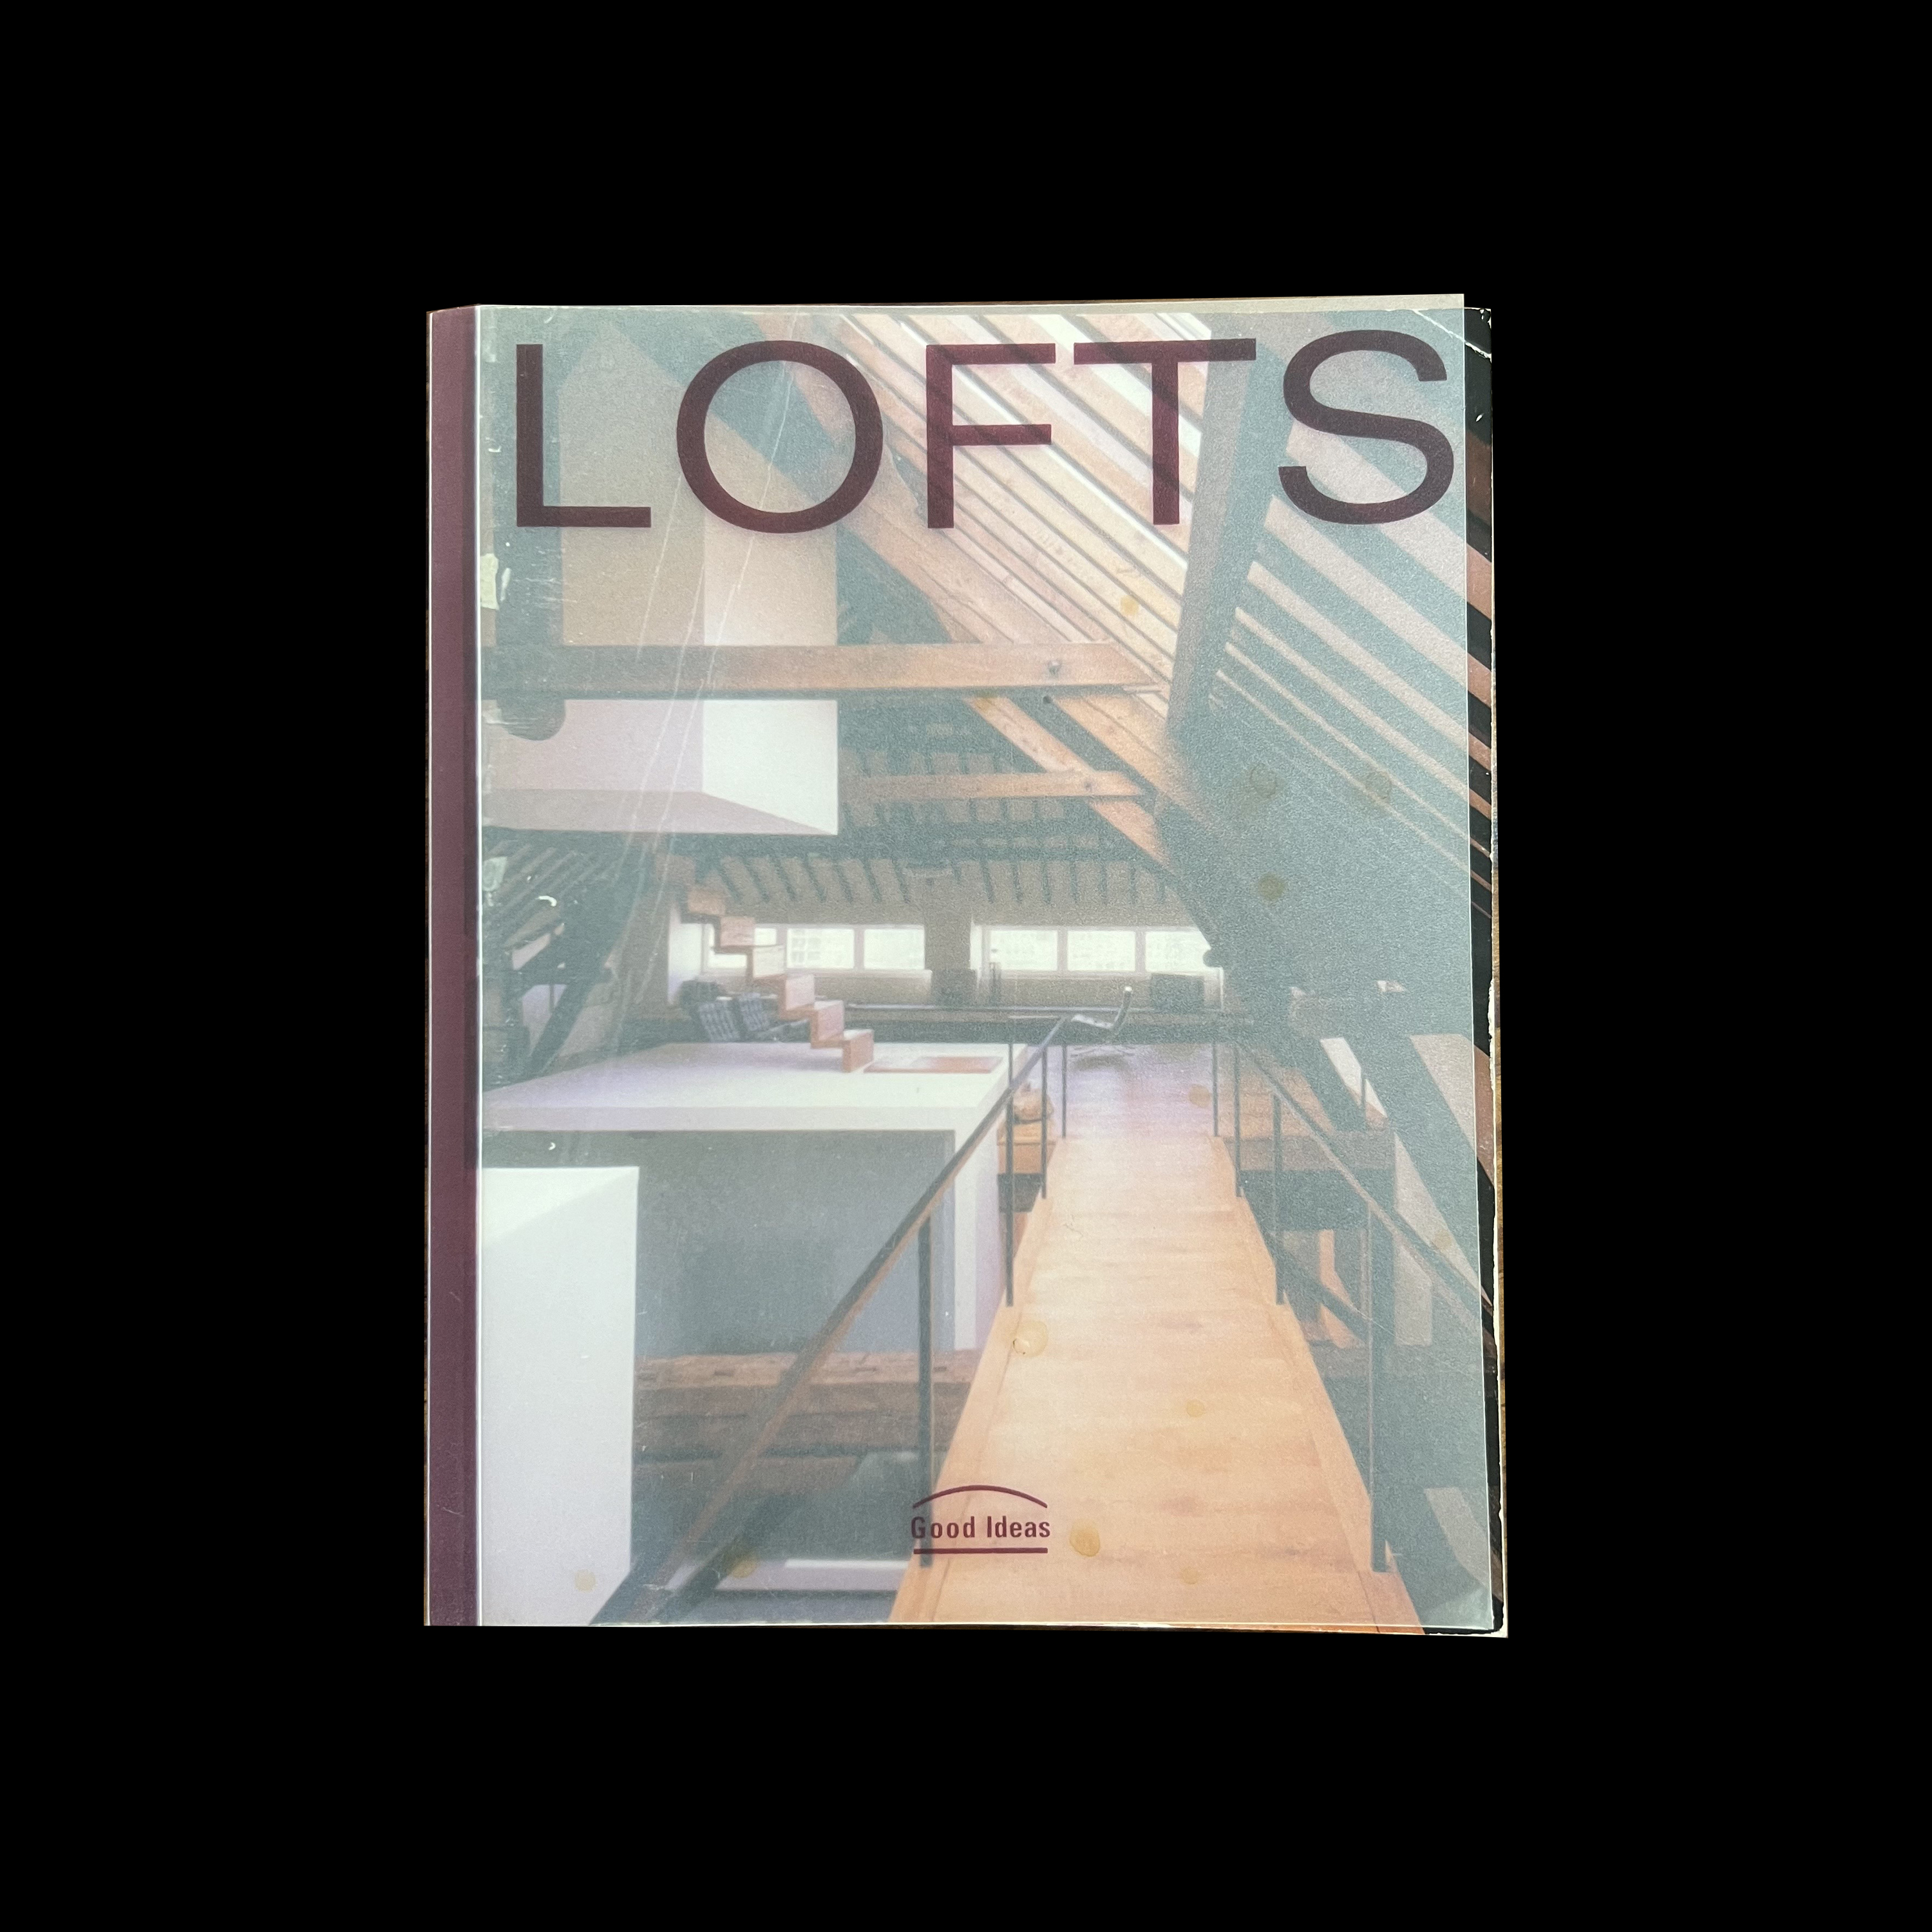 Lofts